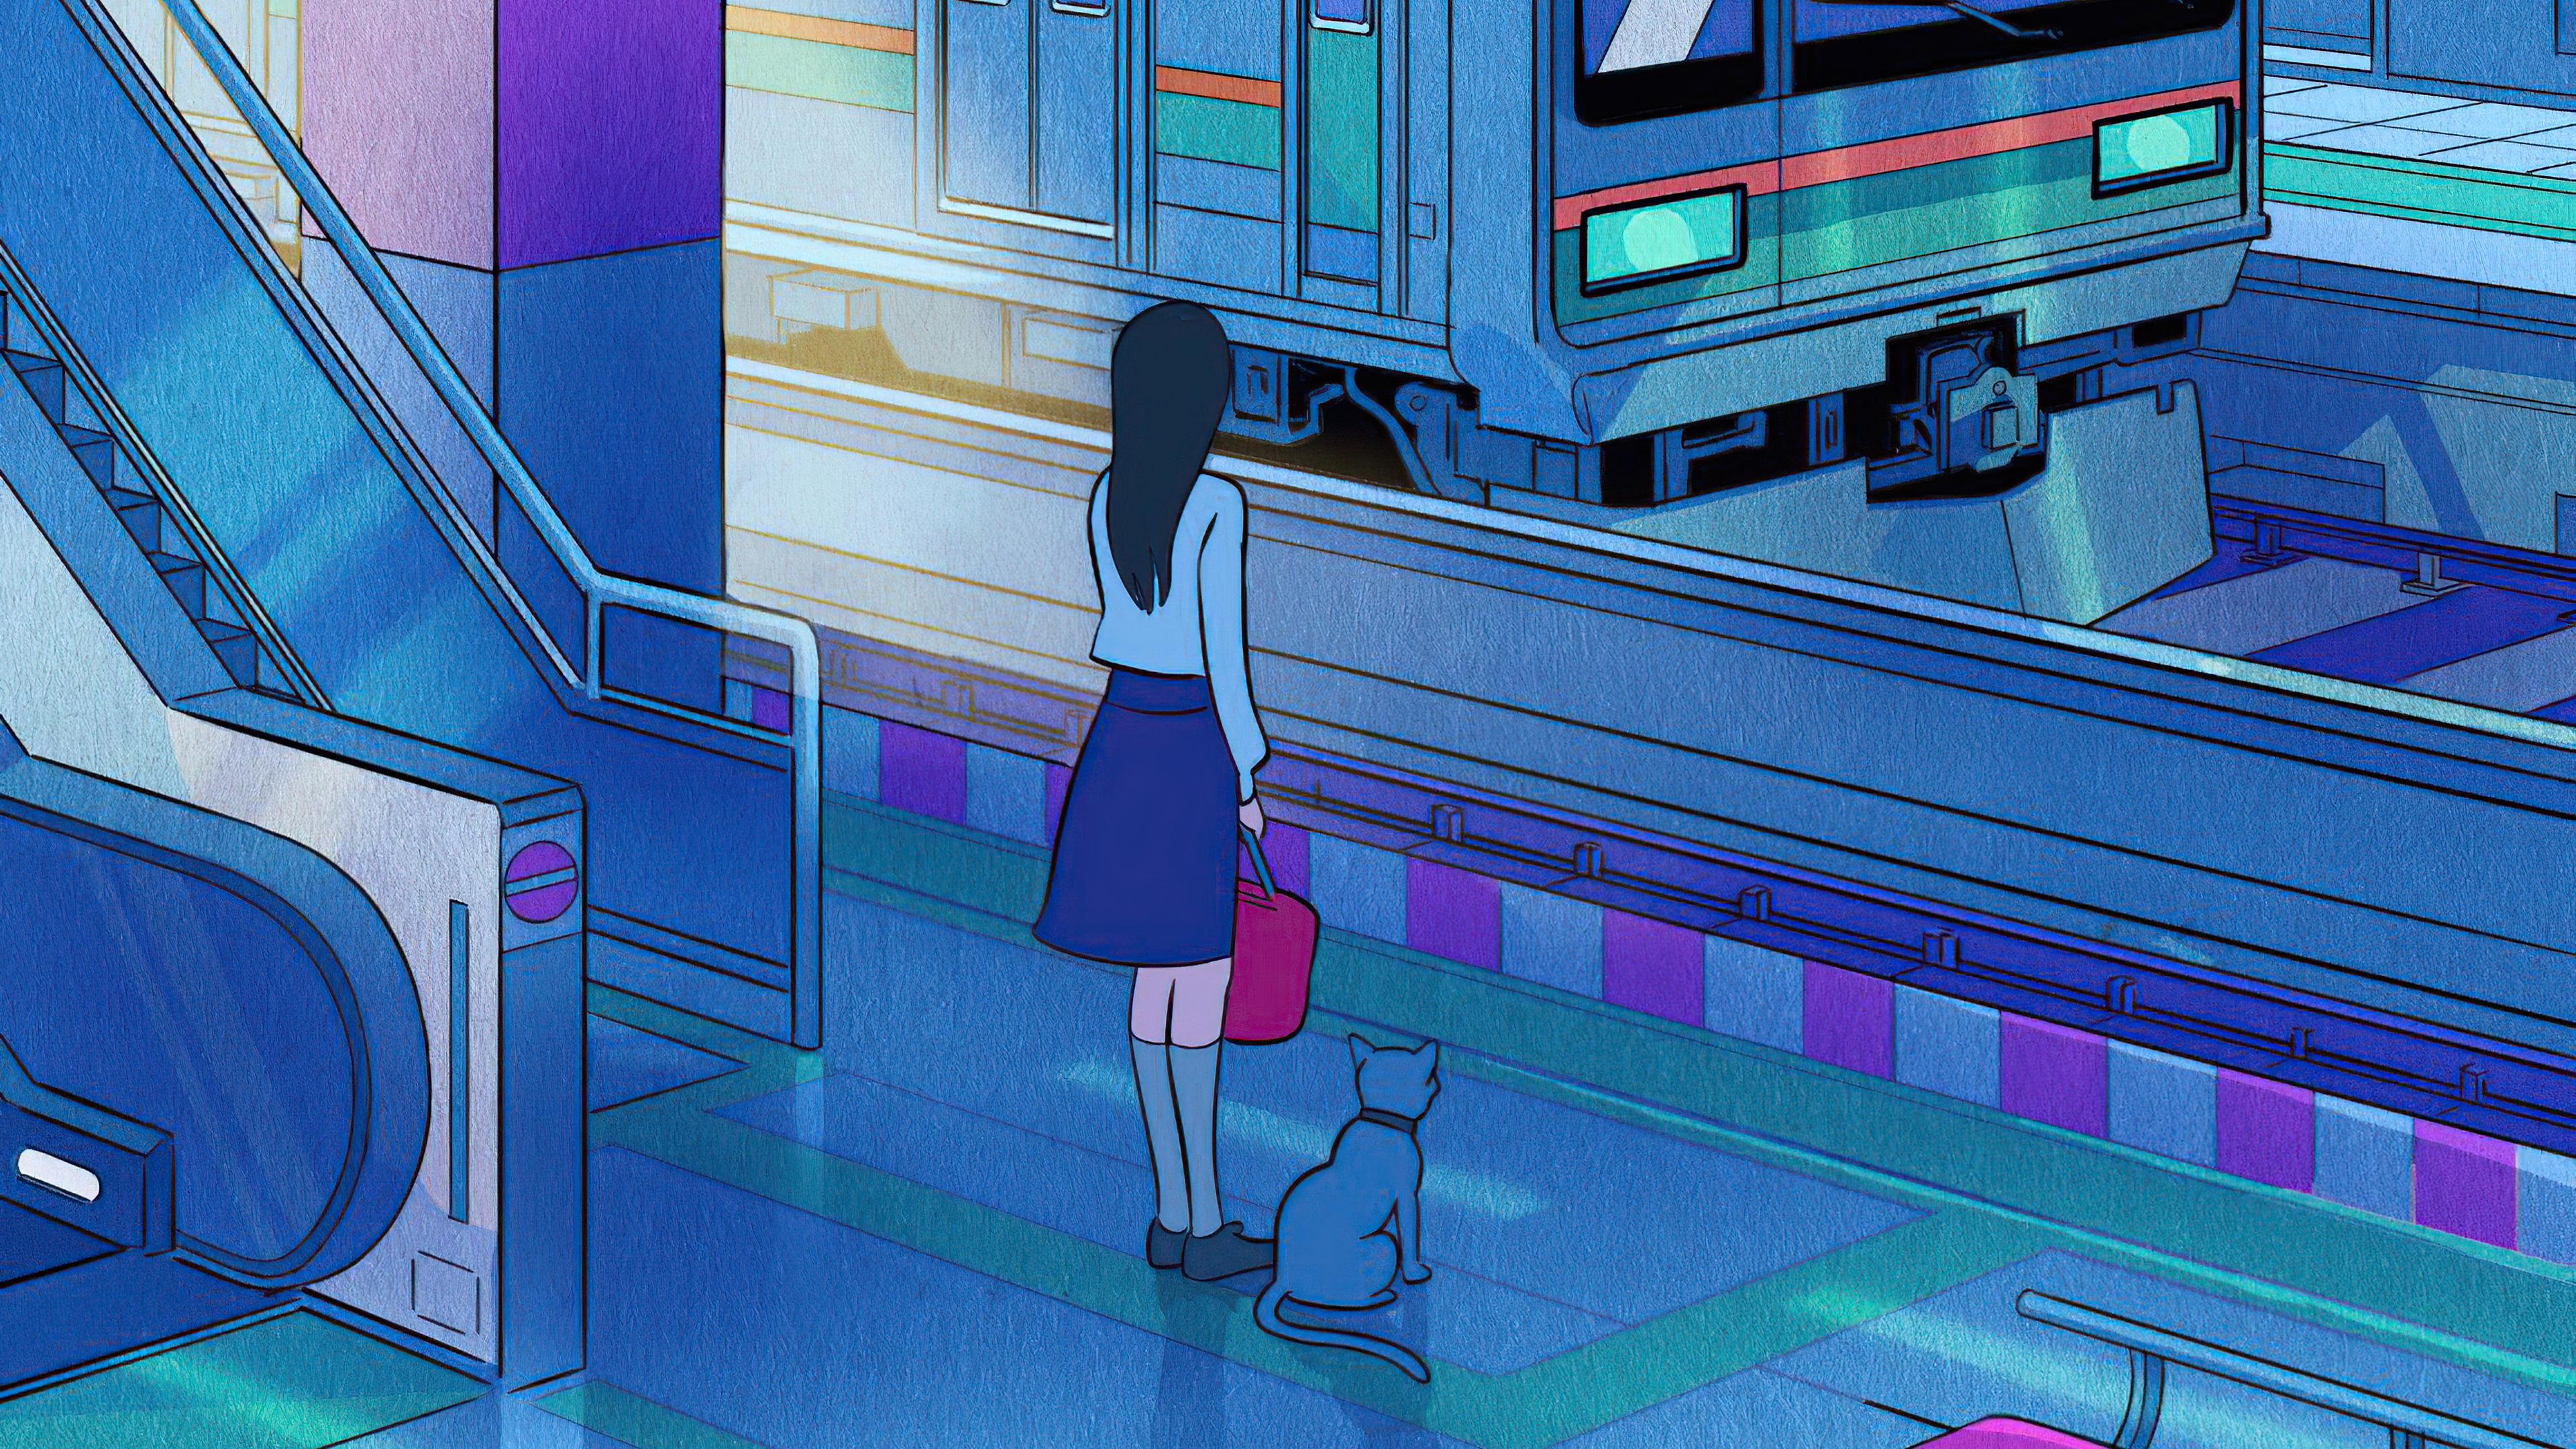 Chihiro's train journey in Spirited Away • Anime UK News